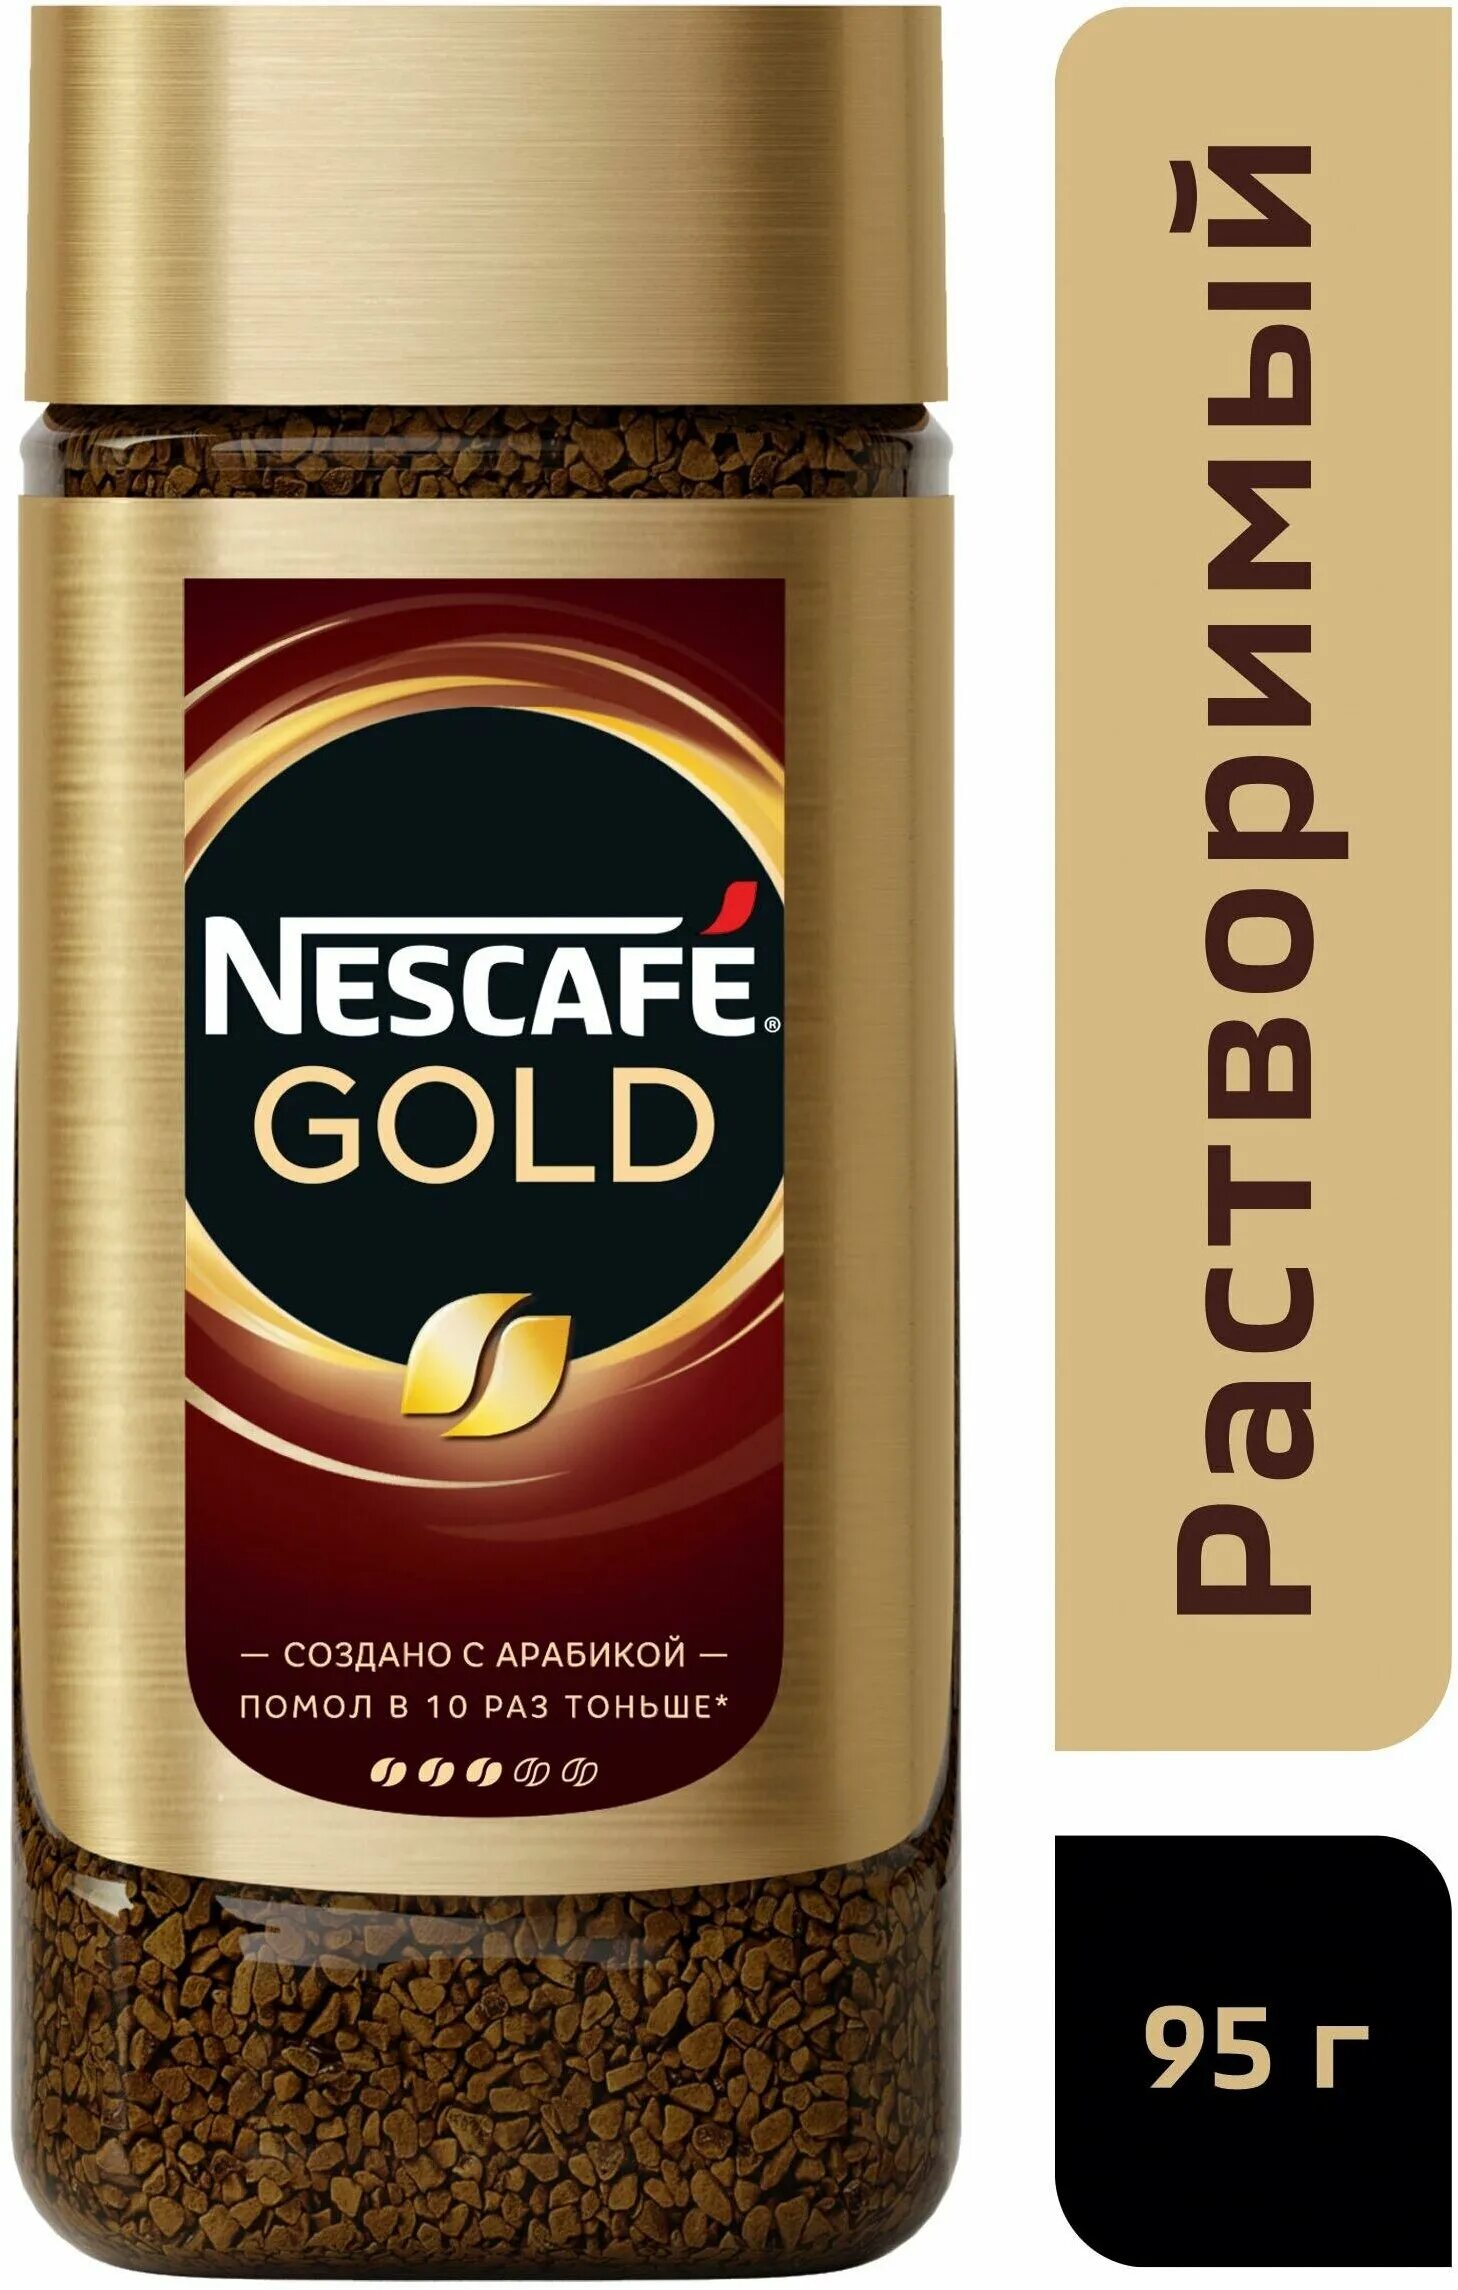 Кофе nescafe gold 190 г. Кофе растворимый Nescafe Gold, 190г. Нескафе Голд 190 стекло. Nescafe Gold 95. Nescafe Gold сублимированный 95 г.